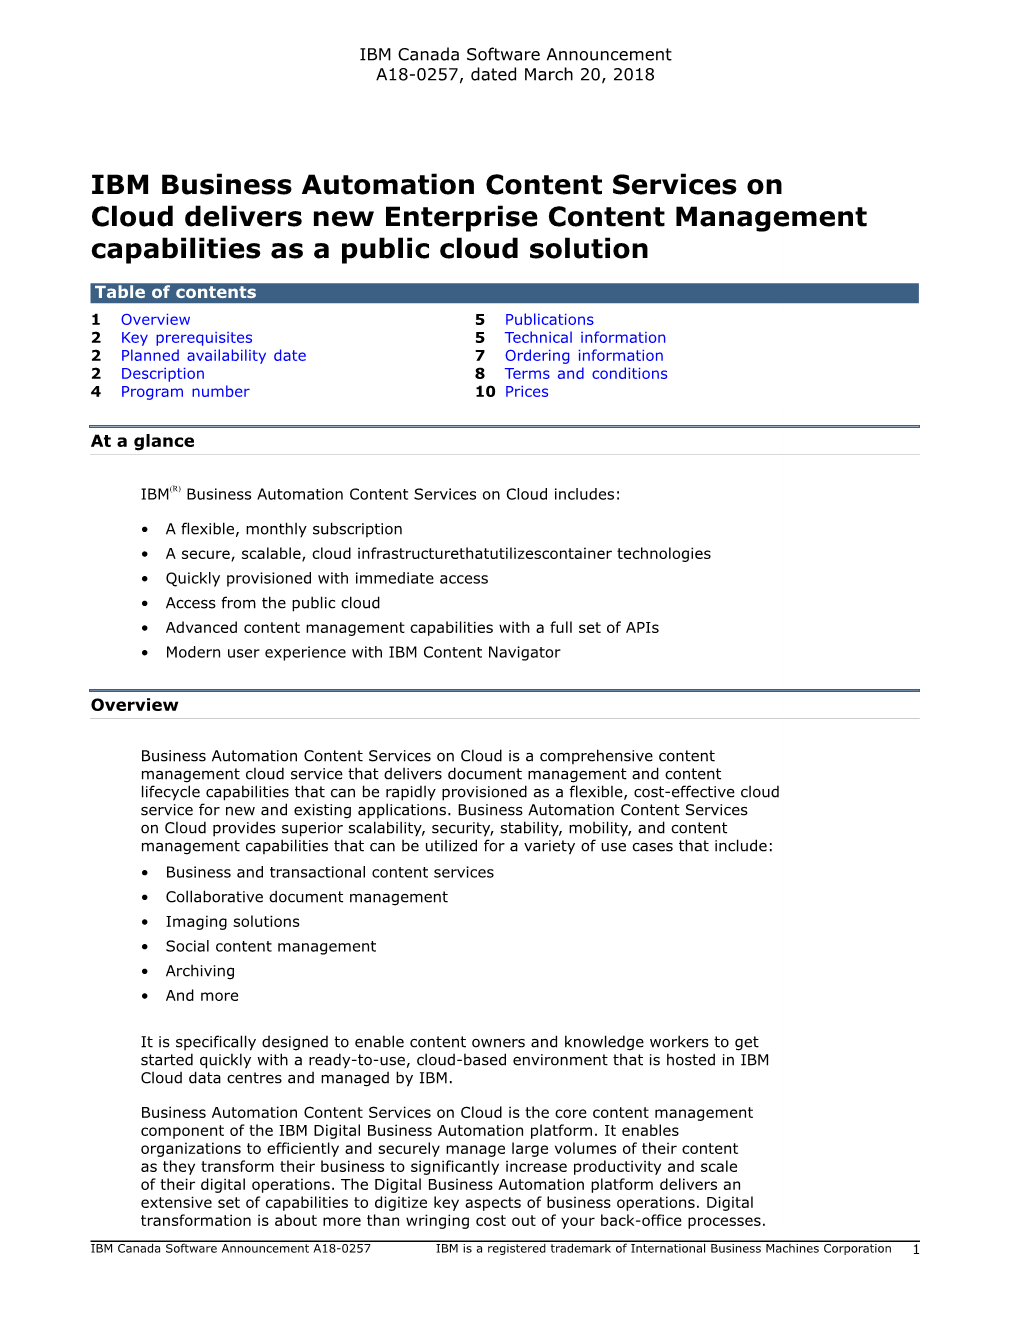 IBM Business Automation Content Services on Cloud Delivers New Enterprise Content Management Capabilities As a Public Cloud Solution